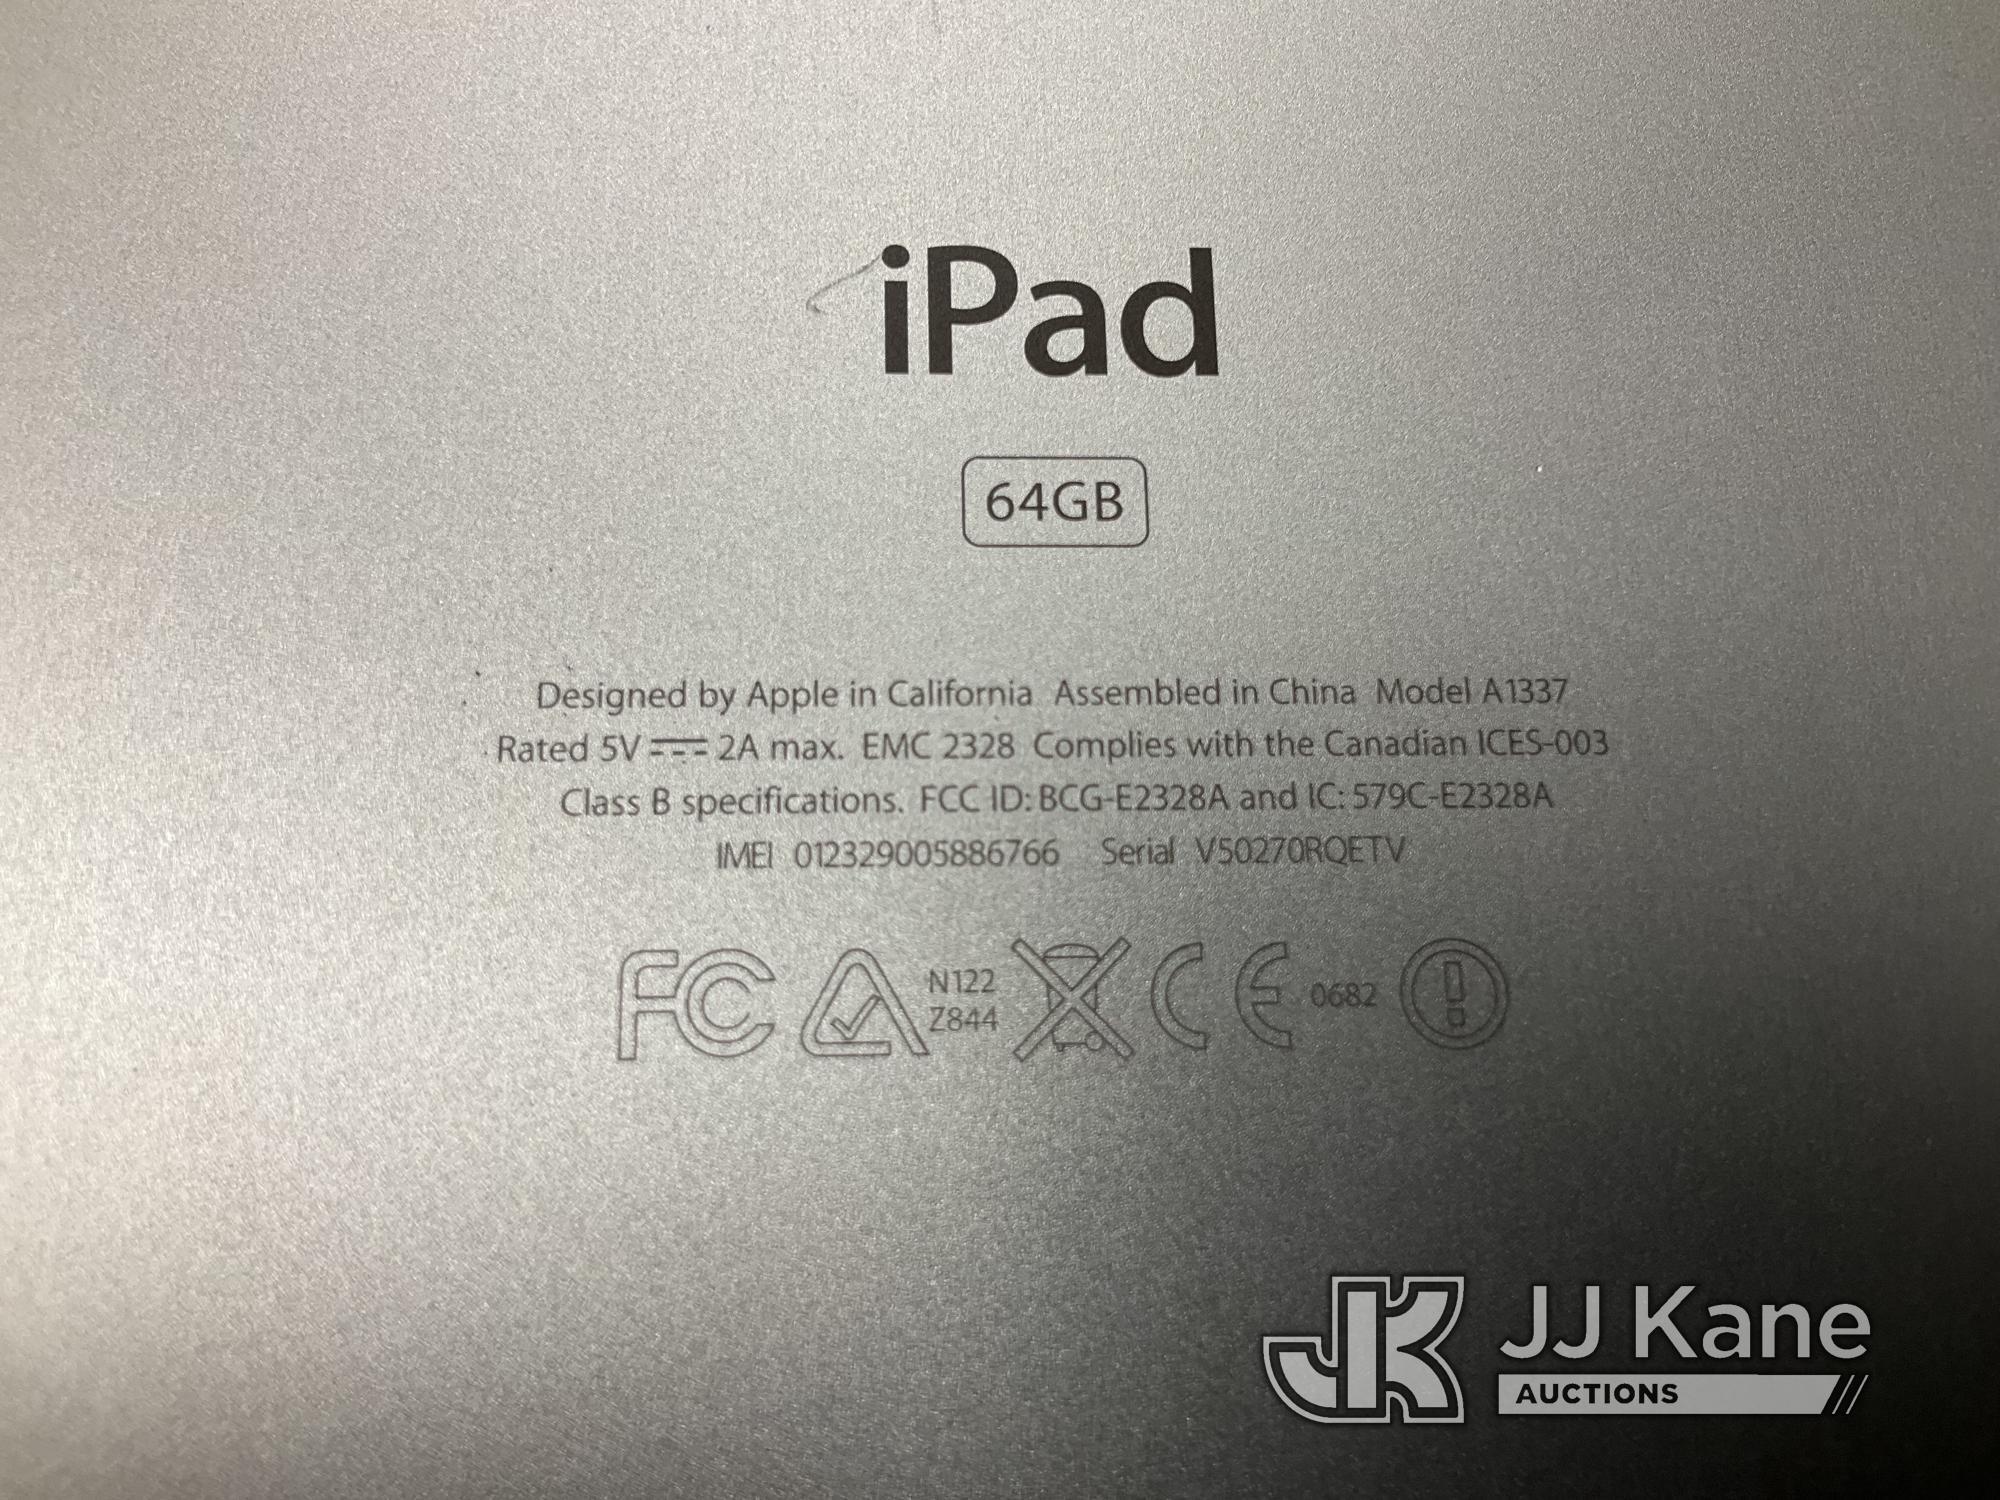 (Jurupa Valley, CA) 9 iPads Used